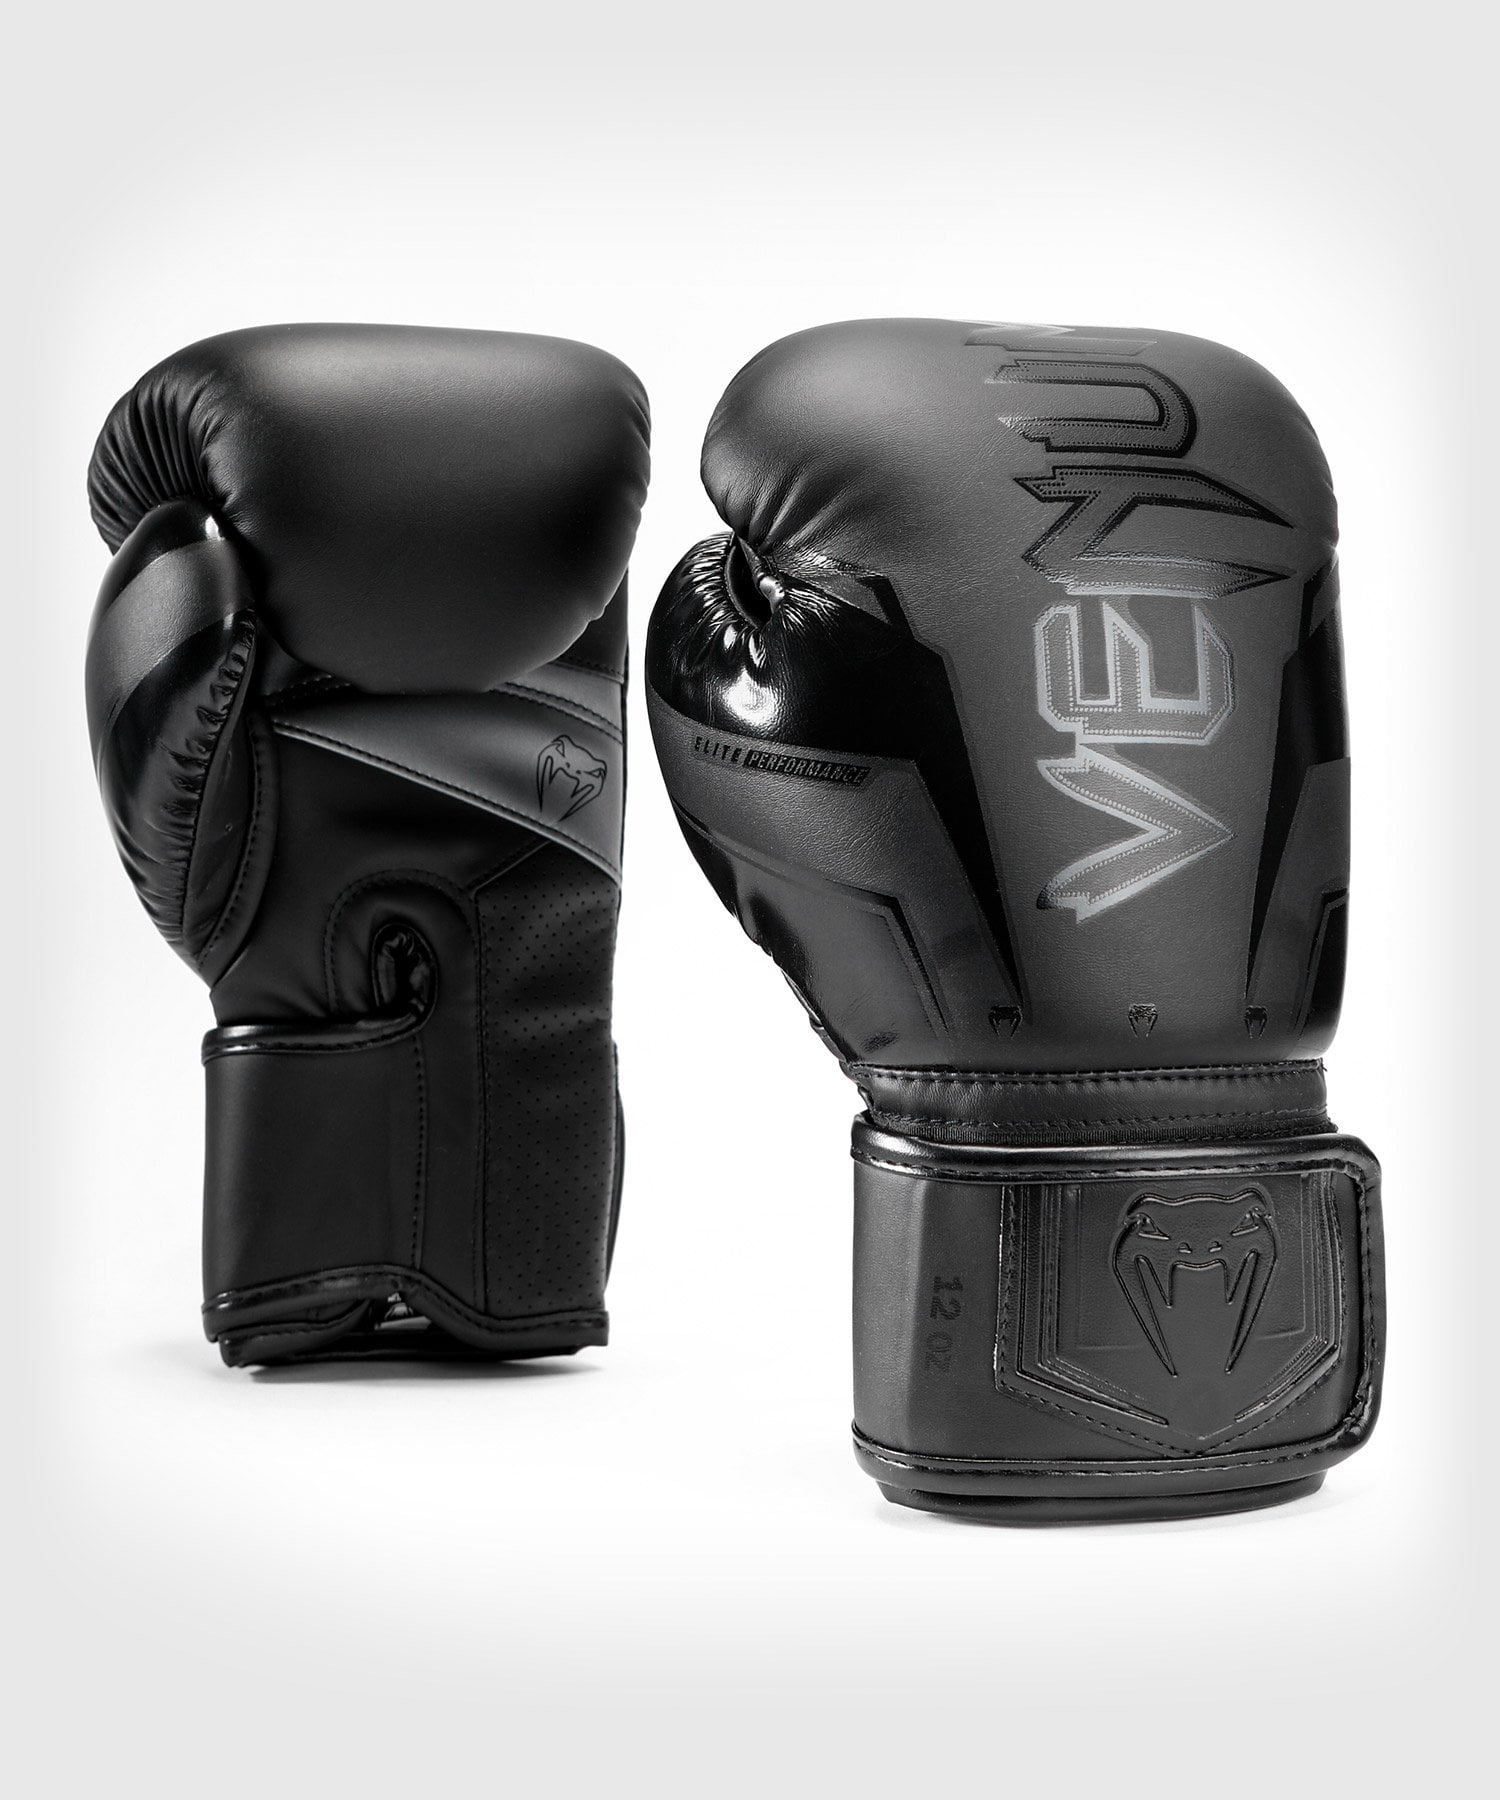 Venum Elite Boxing Gloves - Black - Venum